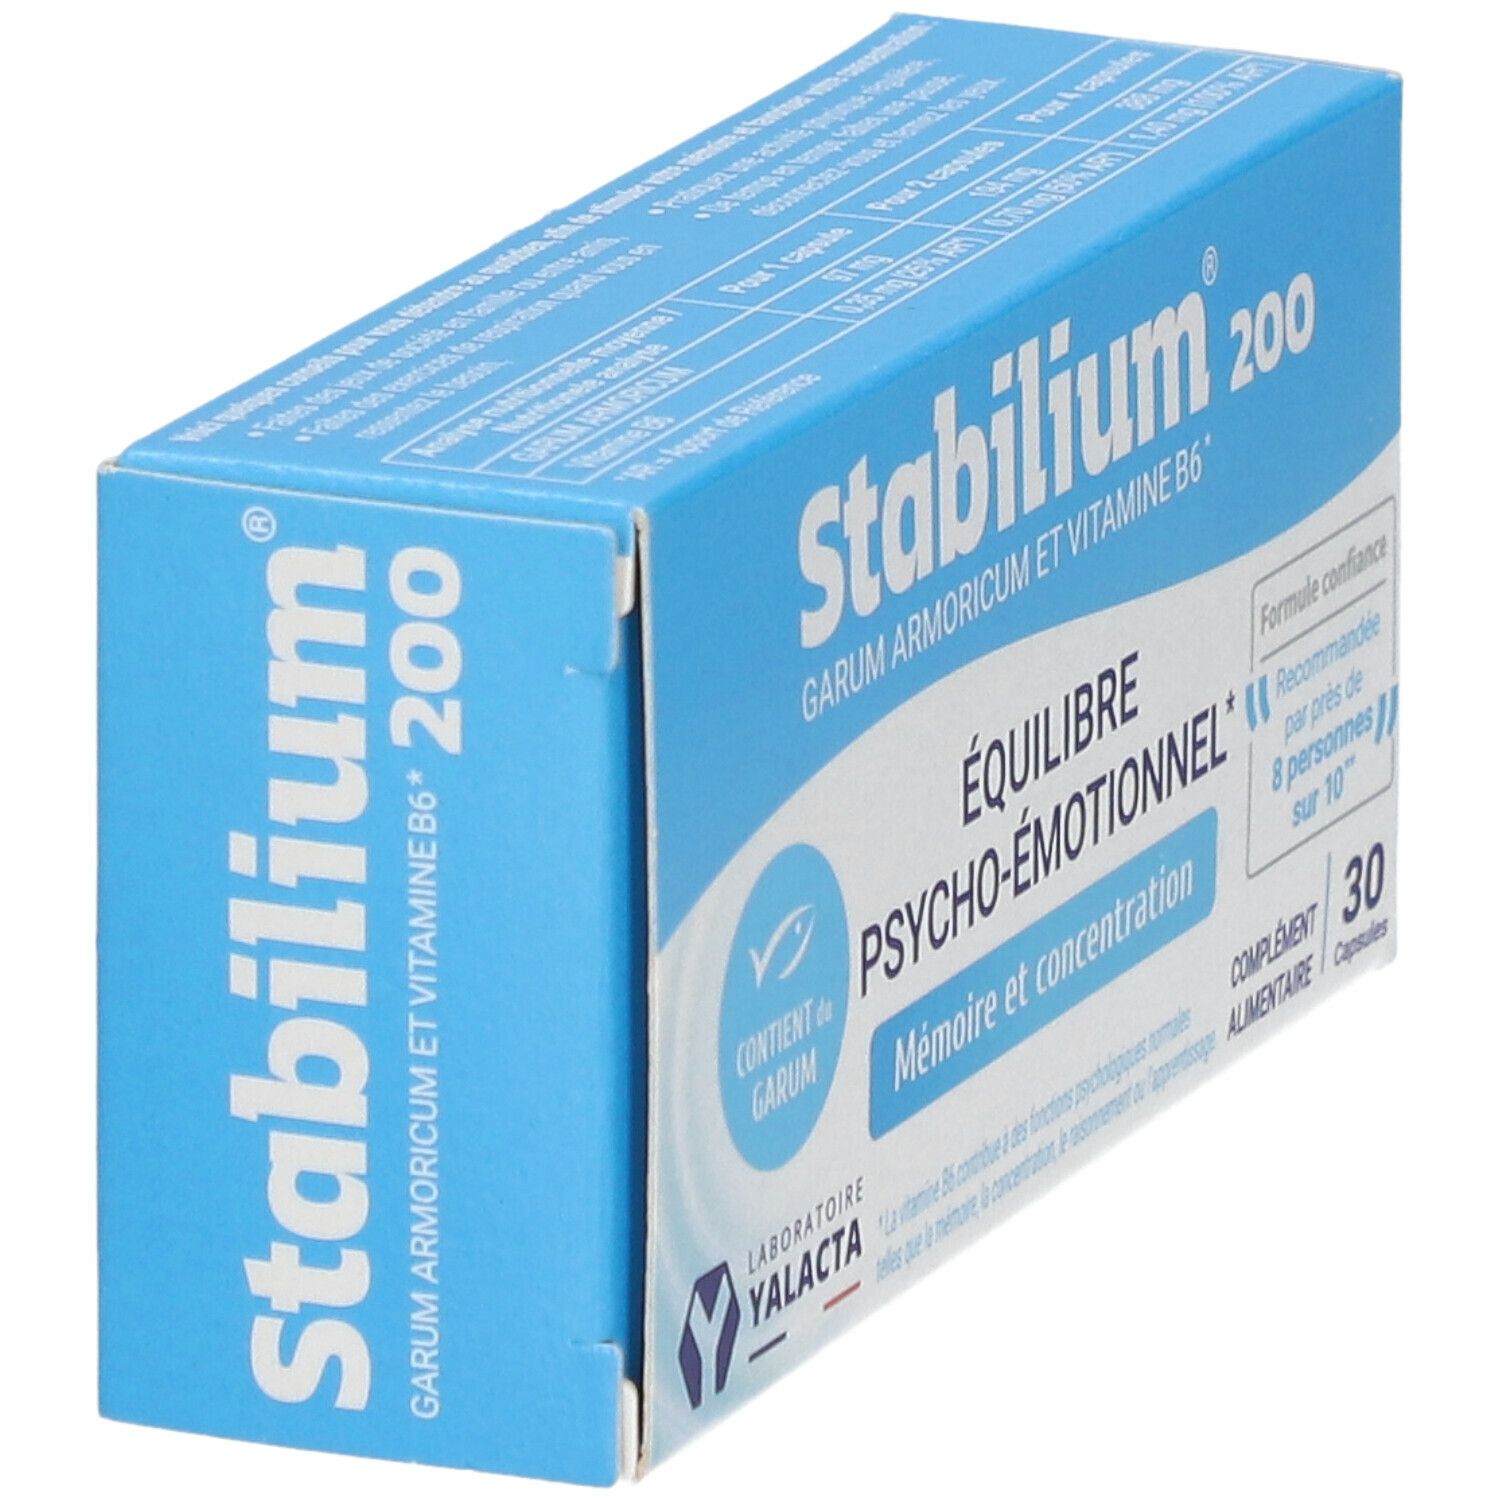 Yalacta Stabilium® 200